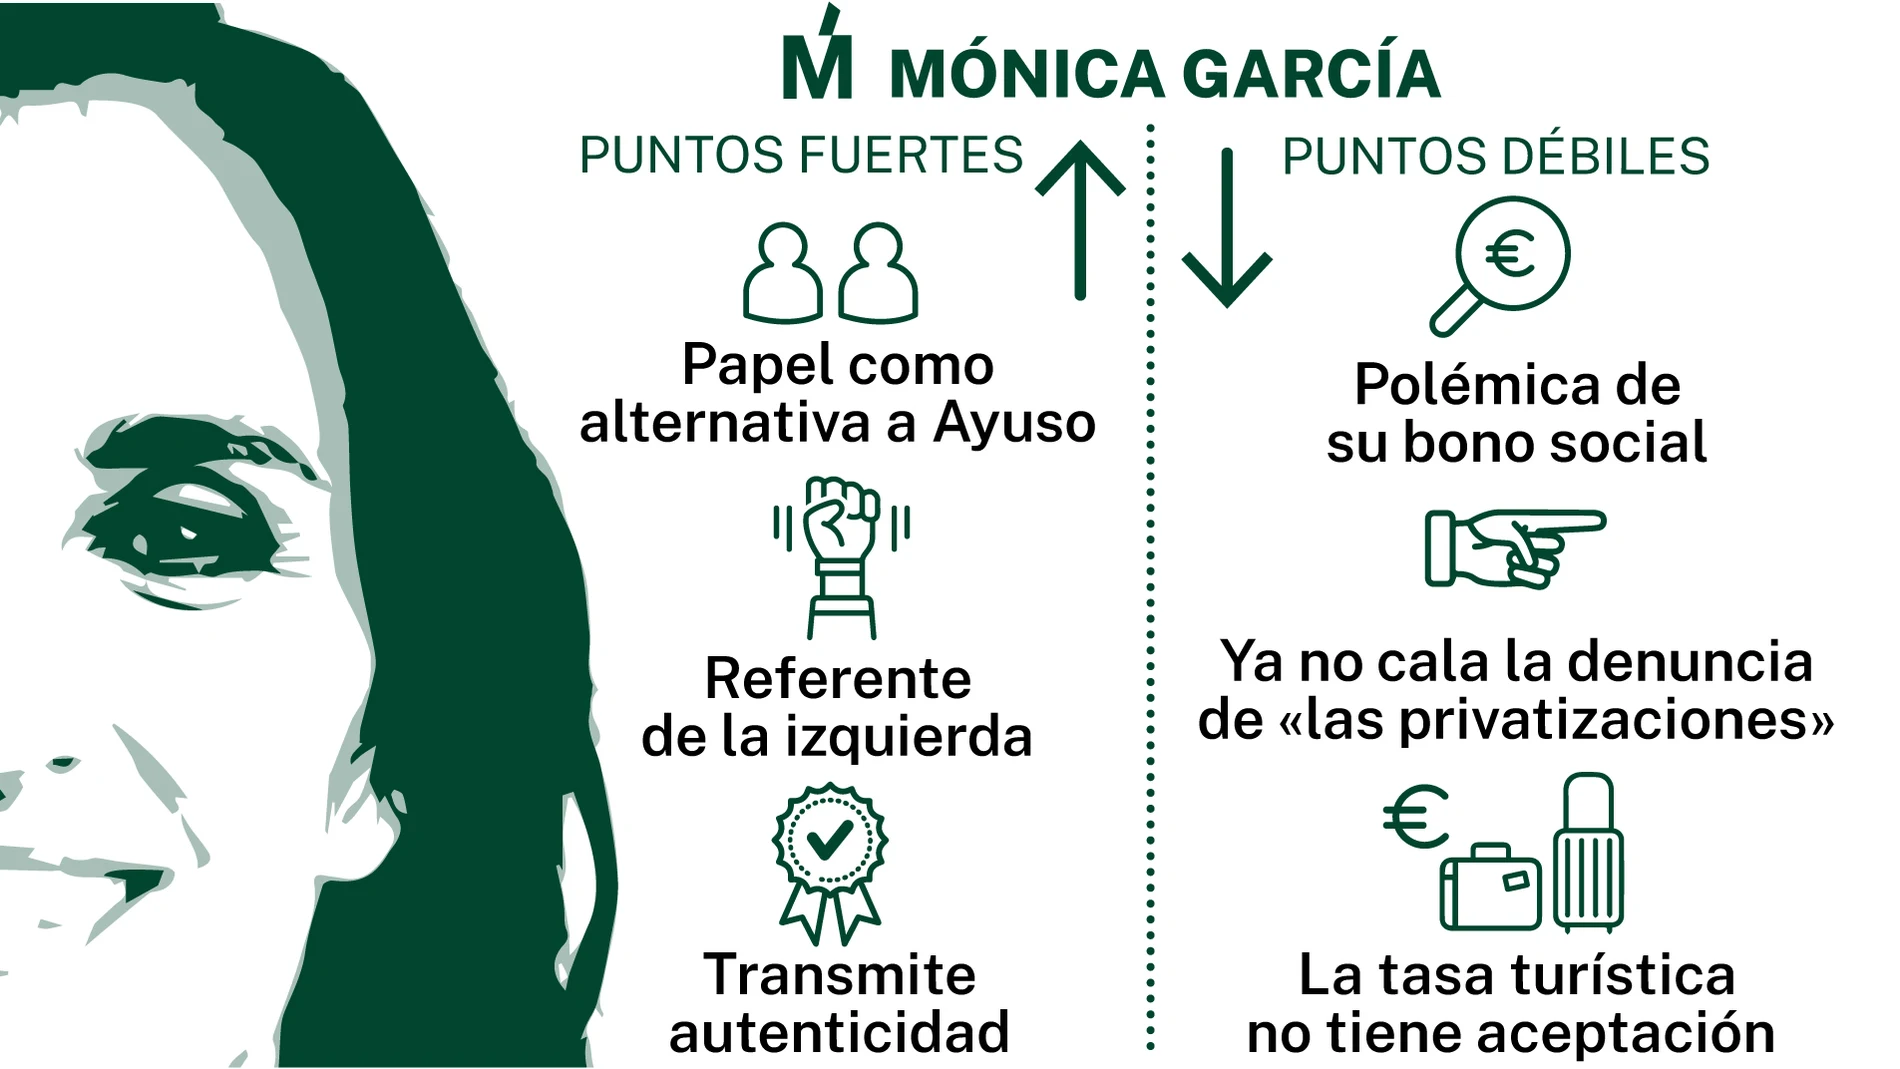 Puntos fuertes y débiles de Mónica García